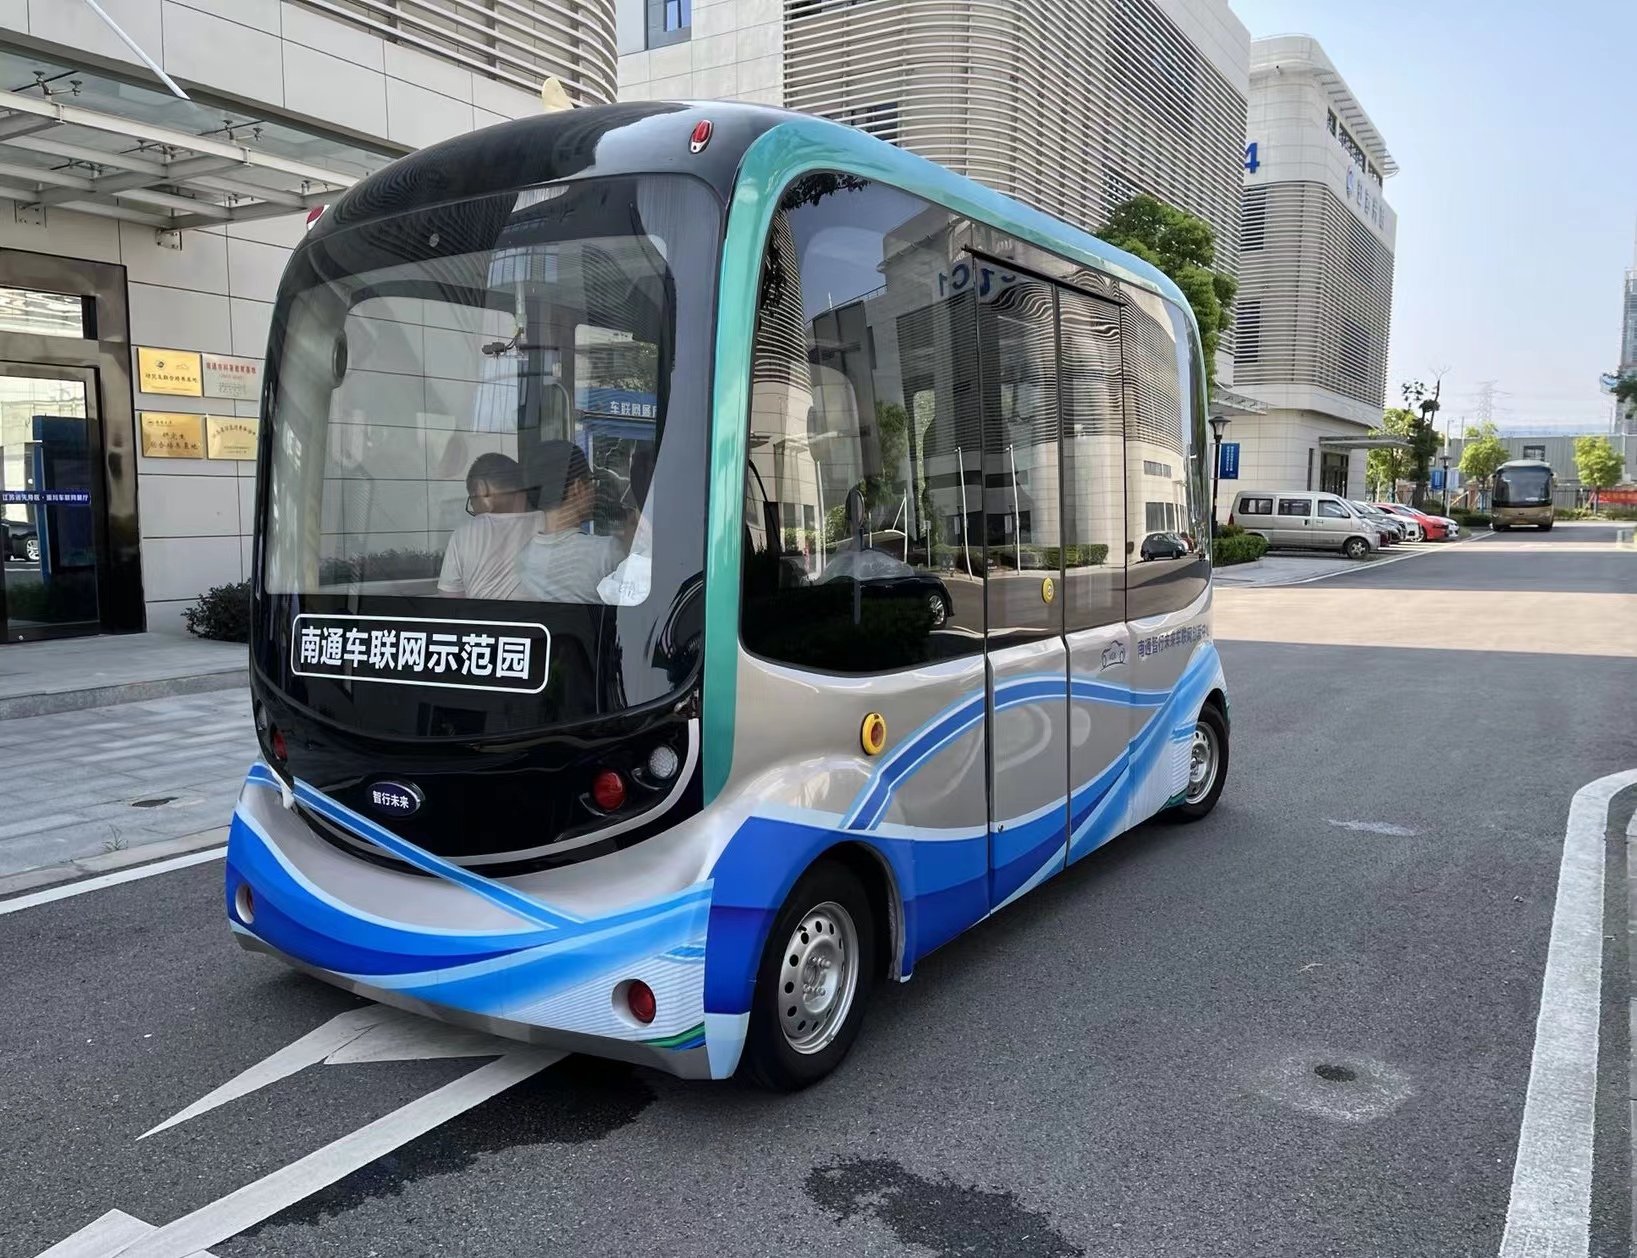 車聯網創新中心研製的「未來號」自動駕駛巴士上路調試.jpg